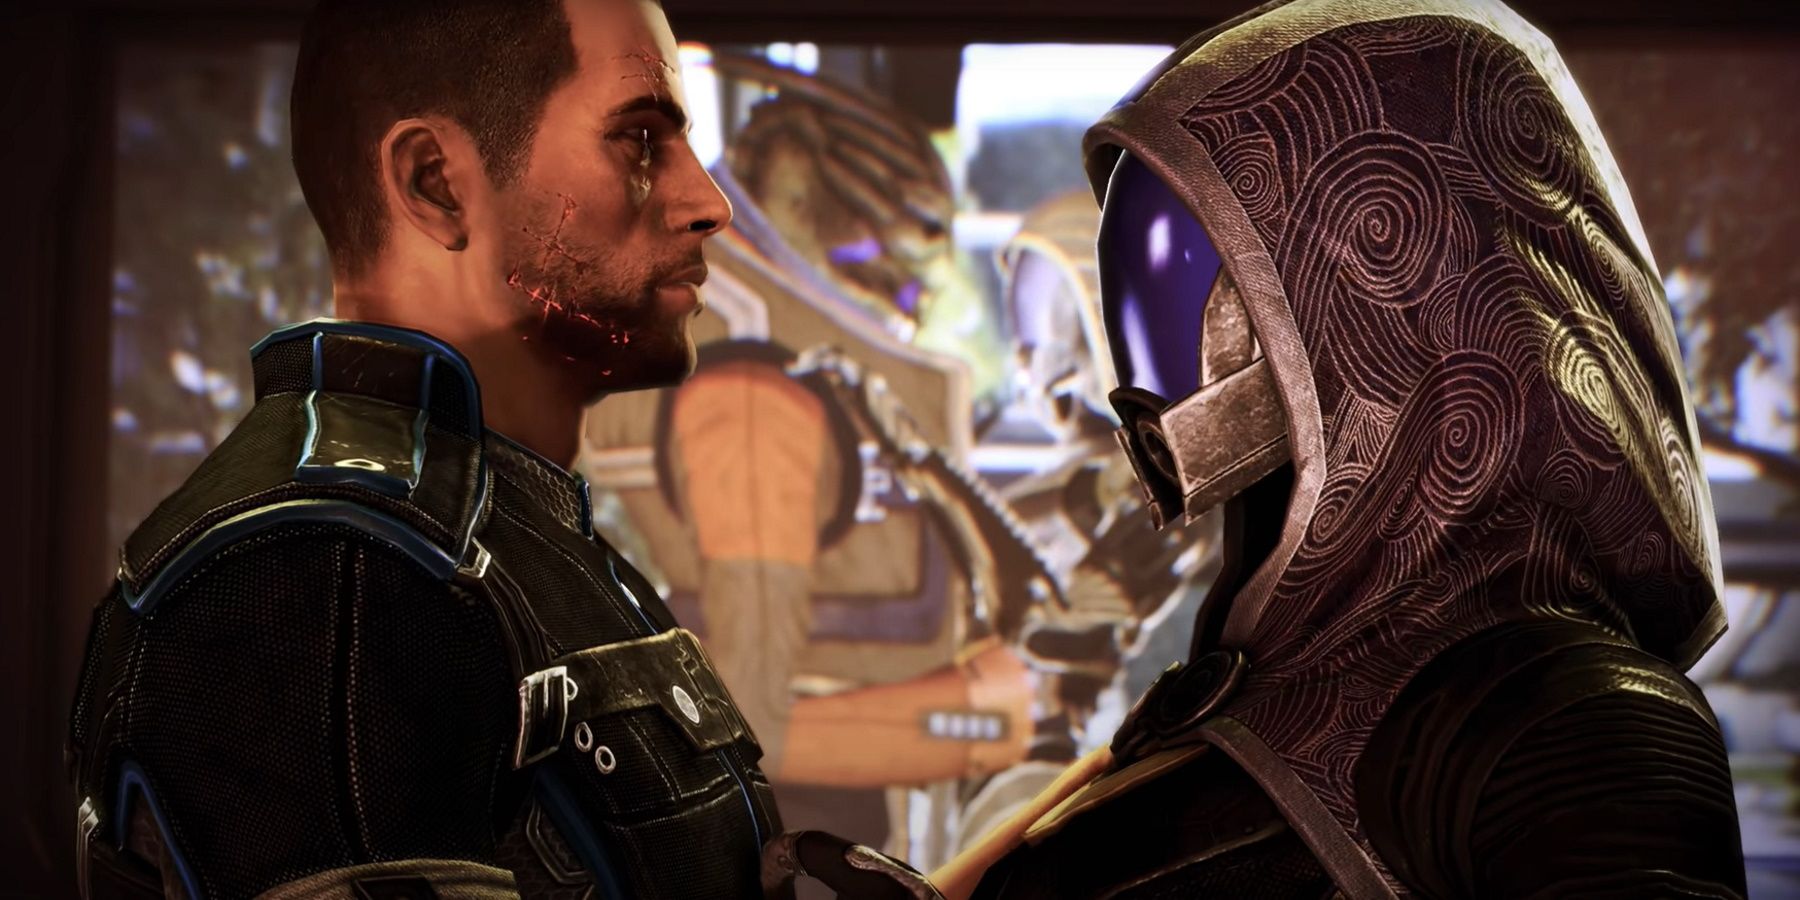 Mass Effect 3: Tali Romance Guide